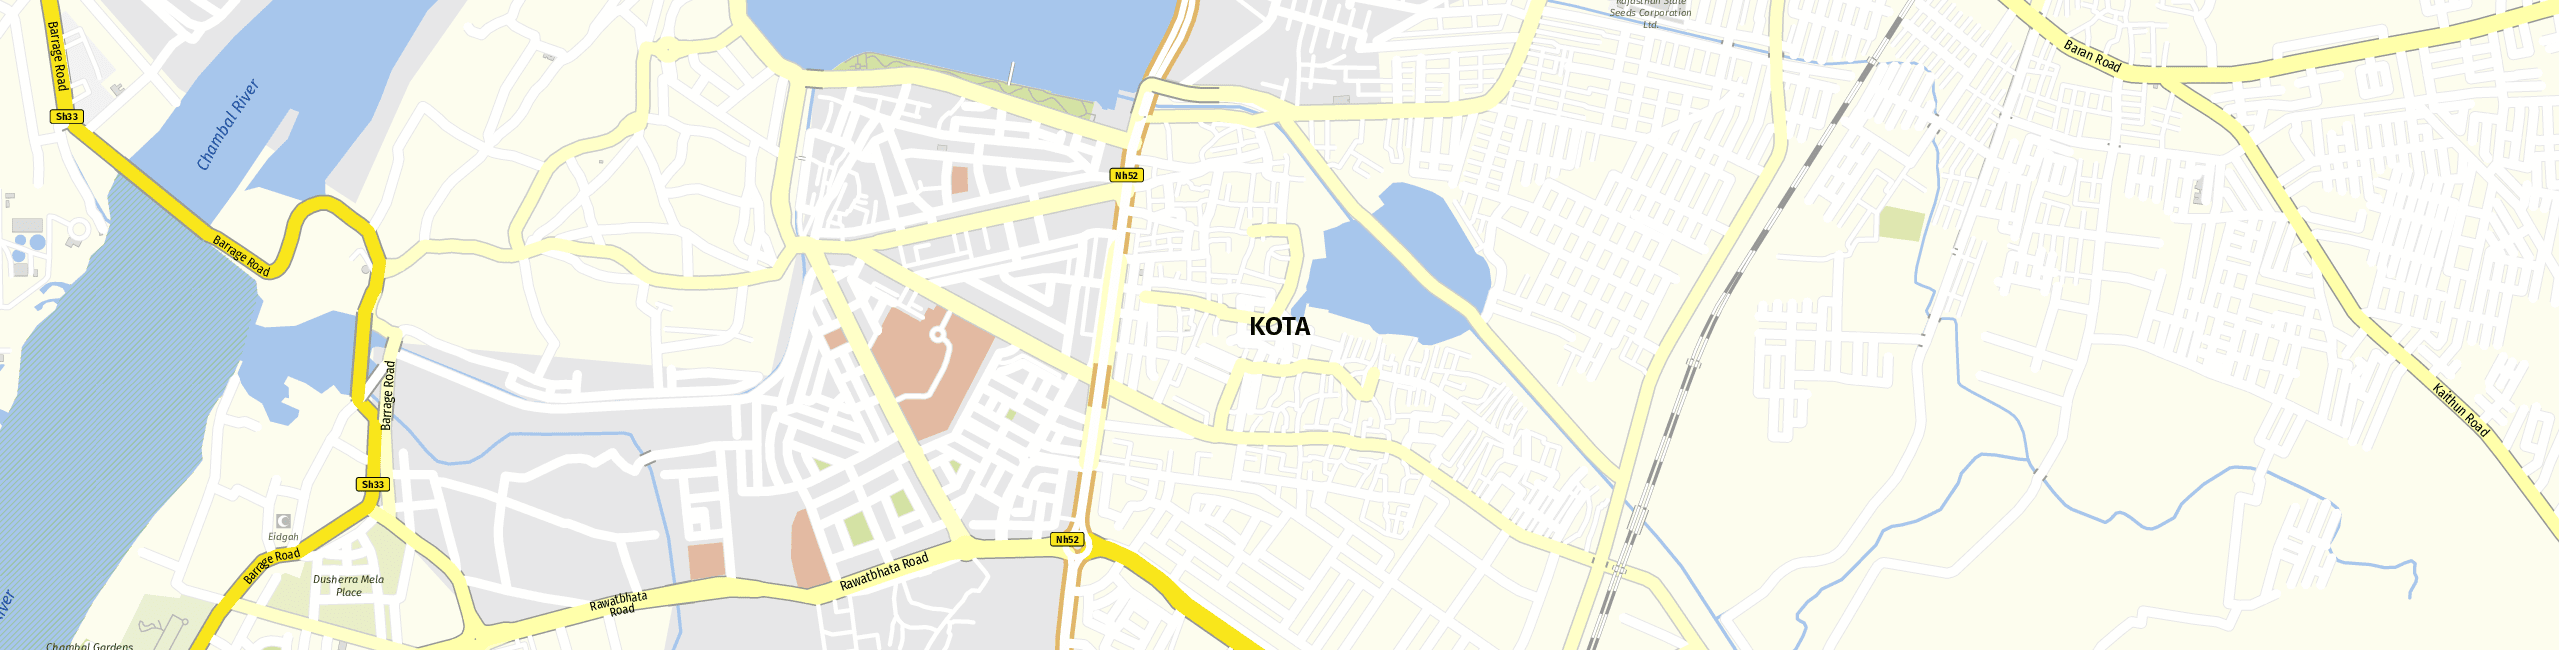 Stadtplan Kota zum Downloaden.